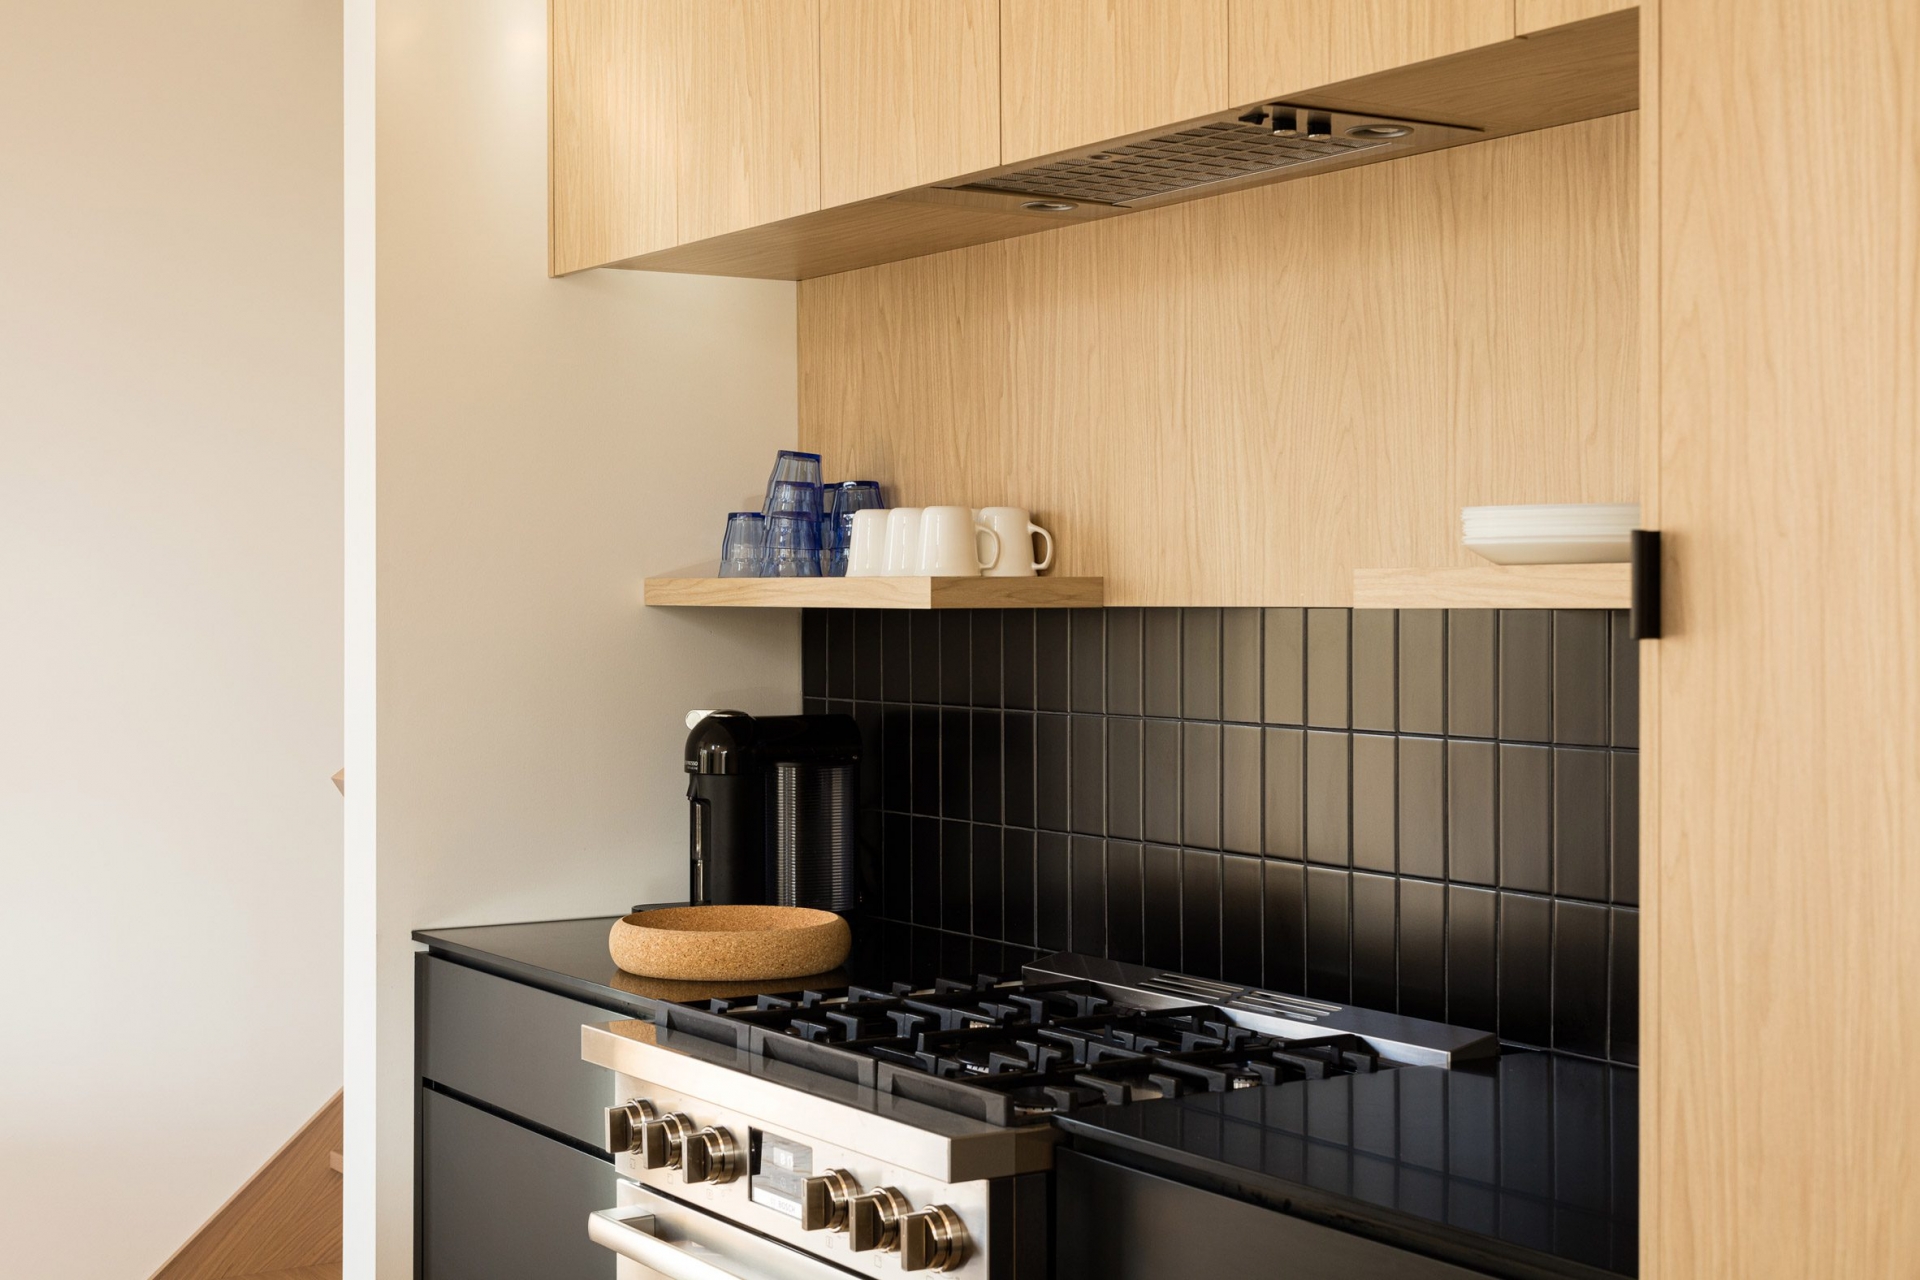 Phòng bếp là sự kết hợp hài hòa giữa nội thất gỗ tươi sáng và gam màu đen tuyền ở cả tủ bếp dưới, mặt bàn và gạch ốp backsplash cho cái nhìn sạch sẽ.